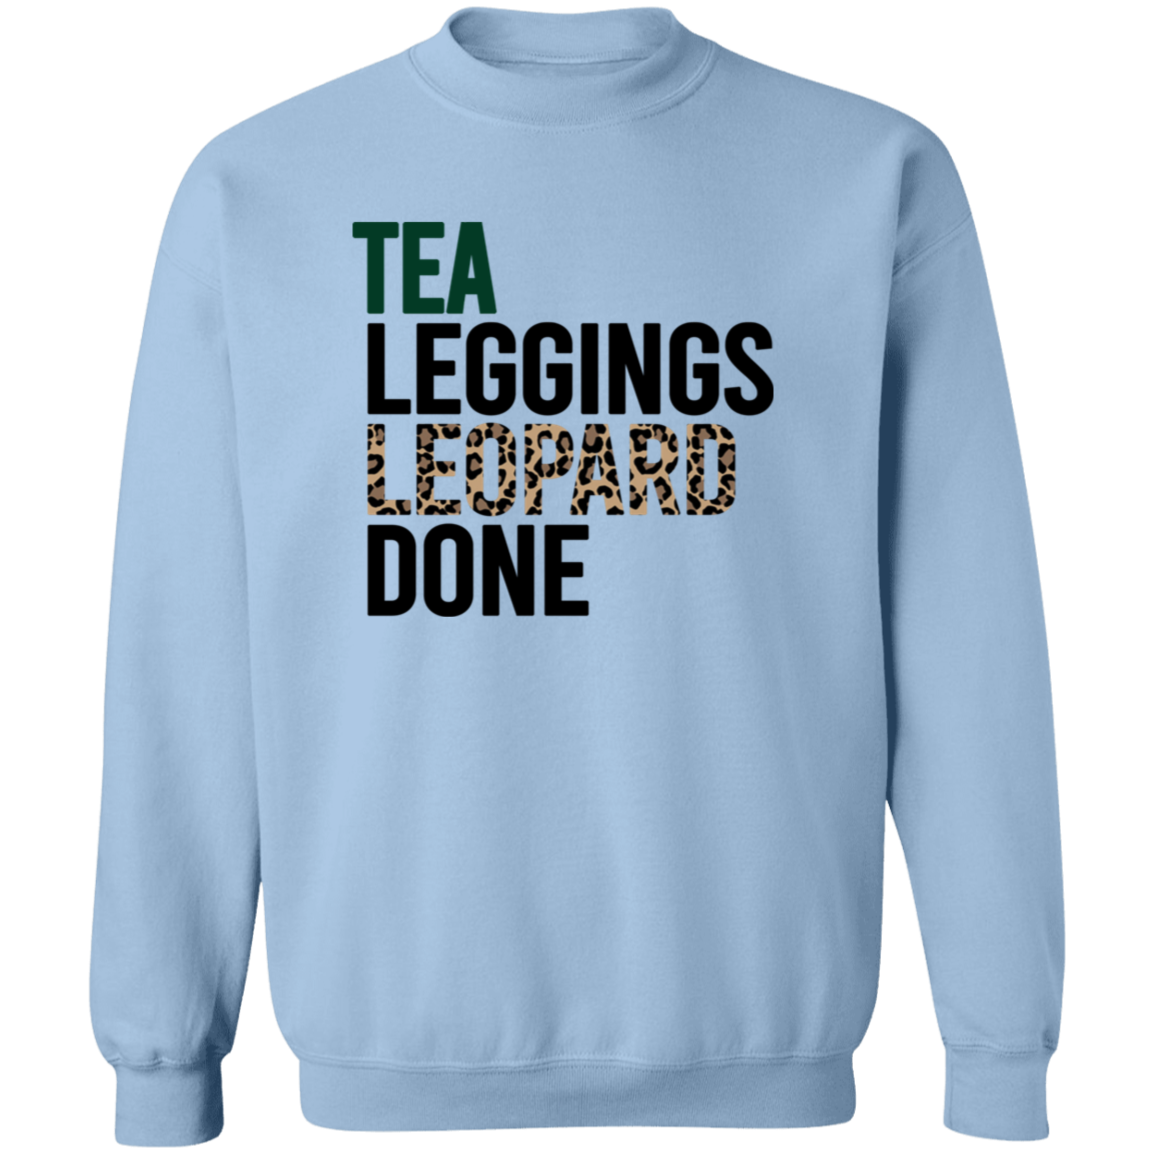 Tea Leggings Leopard Done Sweatshirt